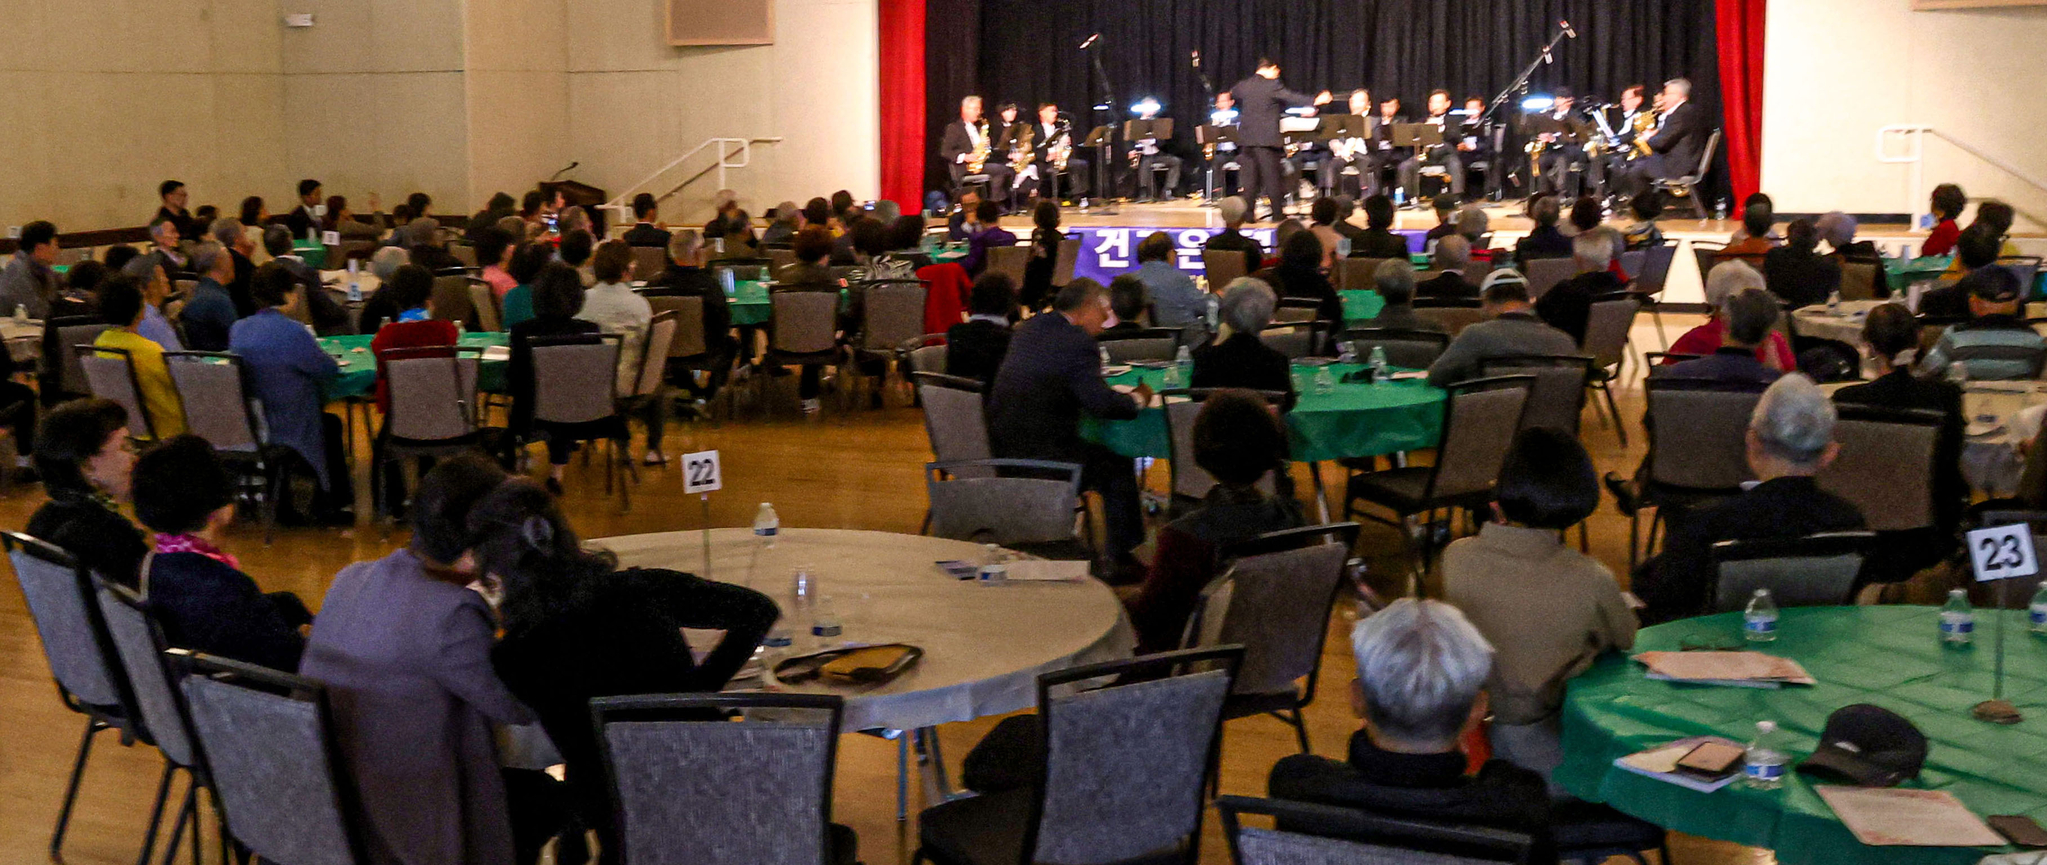 지난 23일 라구나우즈 한인회가 개최한 음악회 참석자들이 색소폰 연주를 감상하고 있다. [라구나우즈한인회 제공] 